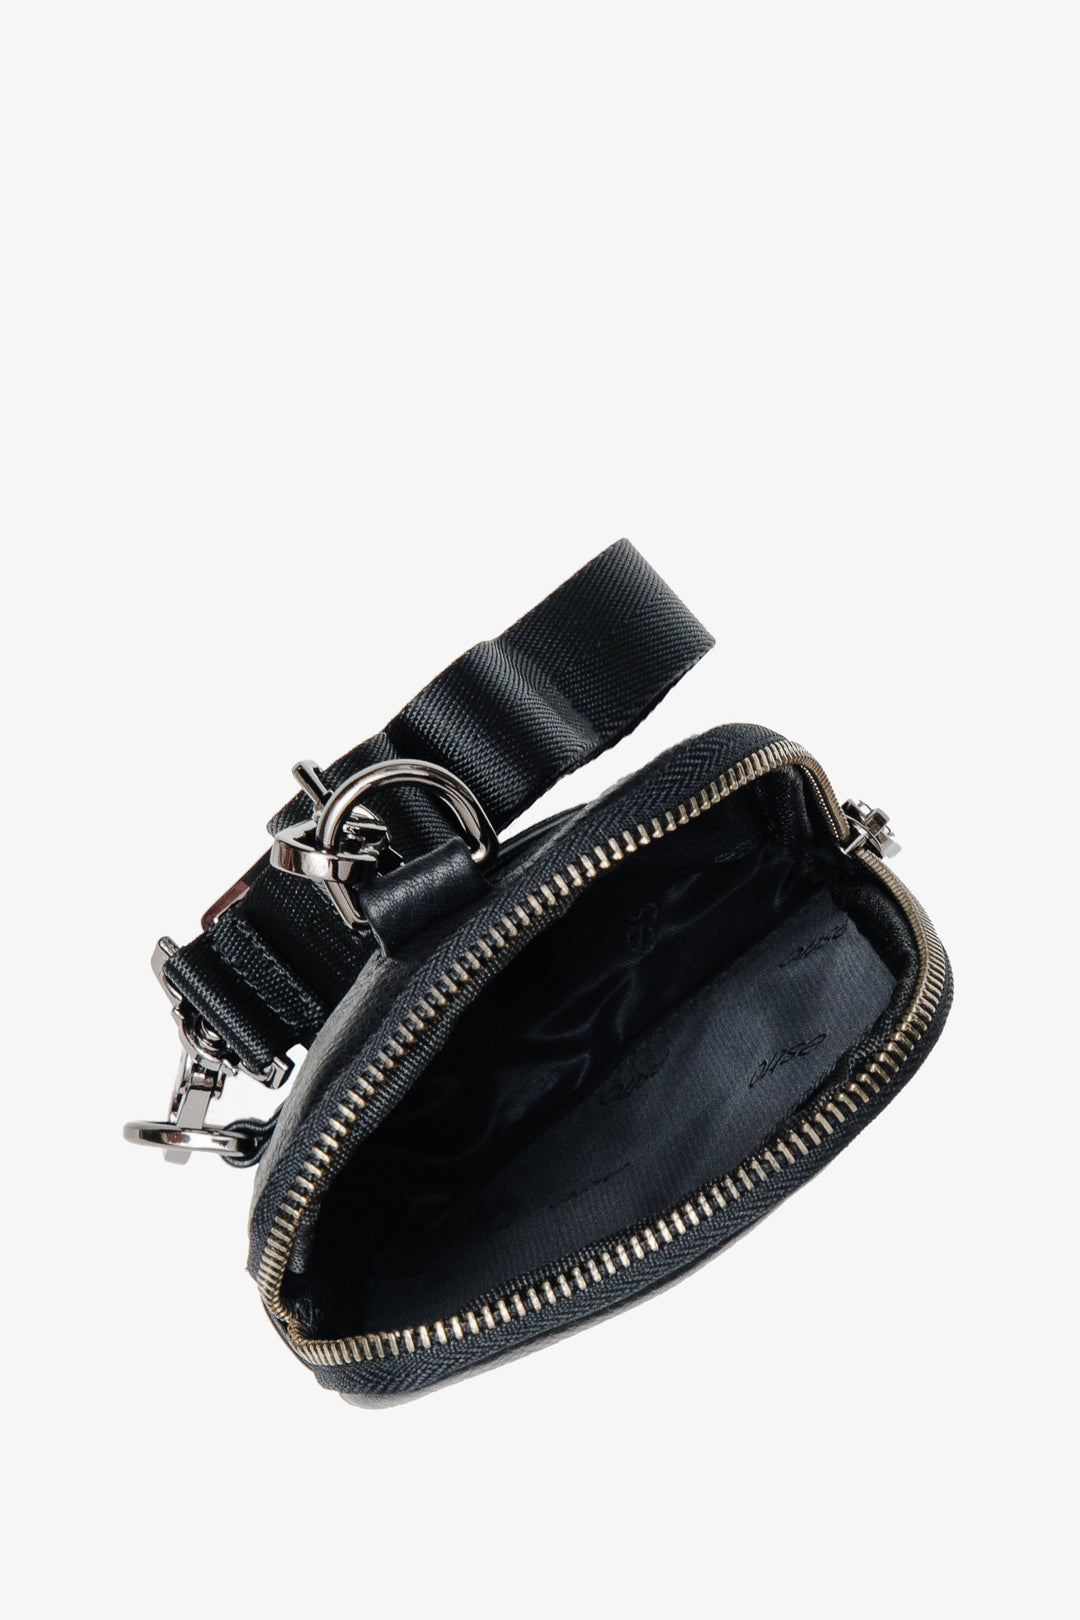 Handy men's black wallet by Estro - close-up on the interior.